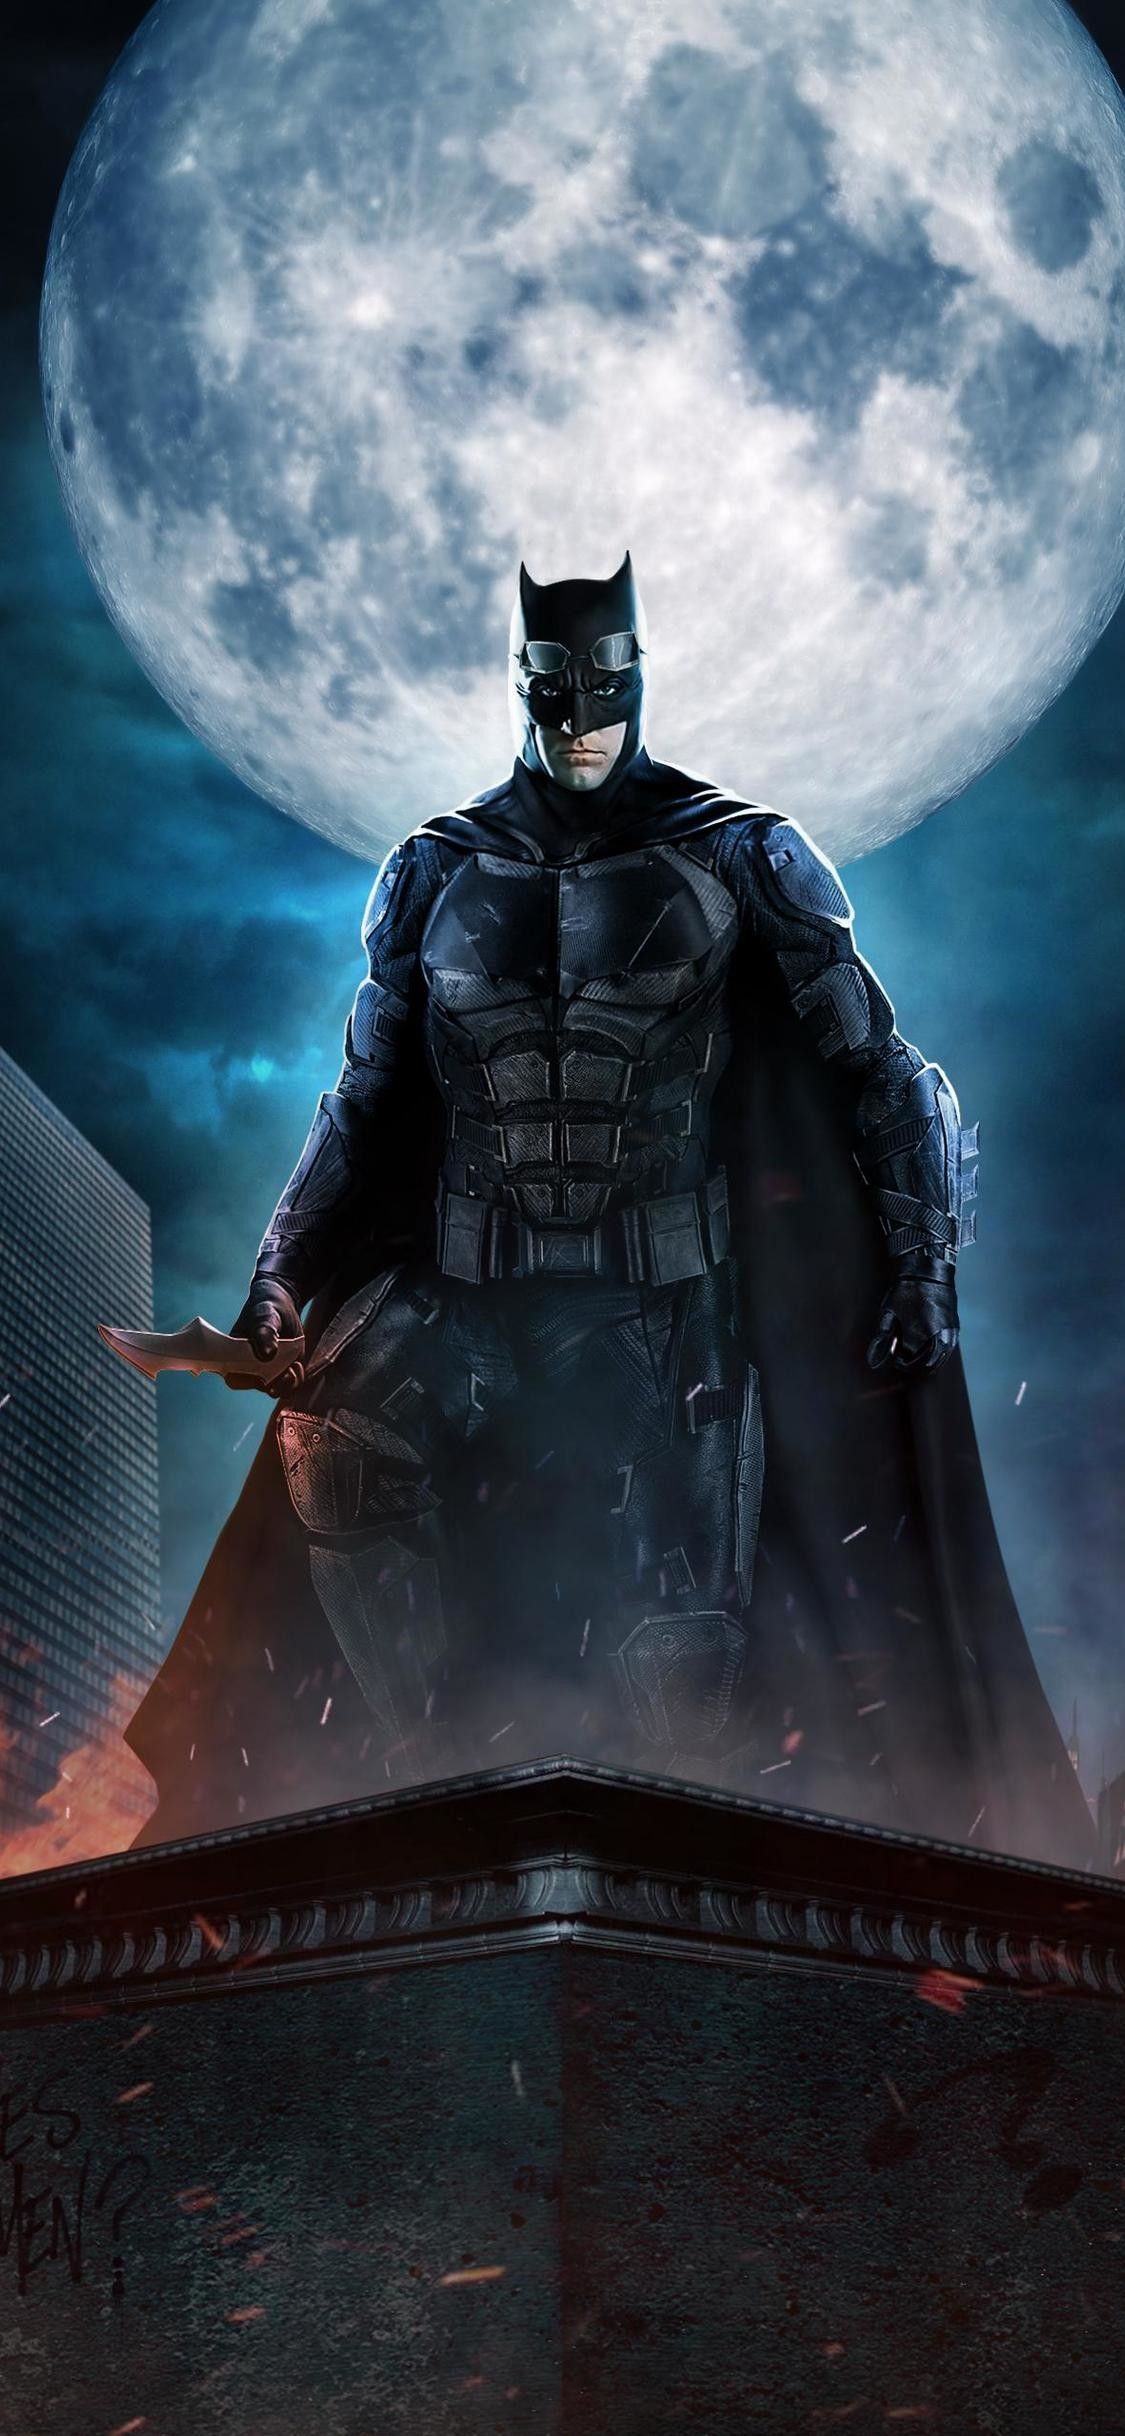 Batman: Xem hình ảnh của Batman và theo dõi anh ta khi anh ta chiến đấu để bảo vệ thành phố Gotham. Với trí thông minh siêu phàm, sức mạnh và tốc độ, Batman là người hùng mà ai cũng ao ước trở thành. Hãy tìm hiểu về chiếc bát cứu thương của anh ta và theo dõi những trận chiến khốc liệt của anh ta.